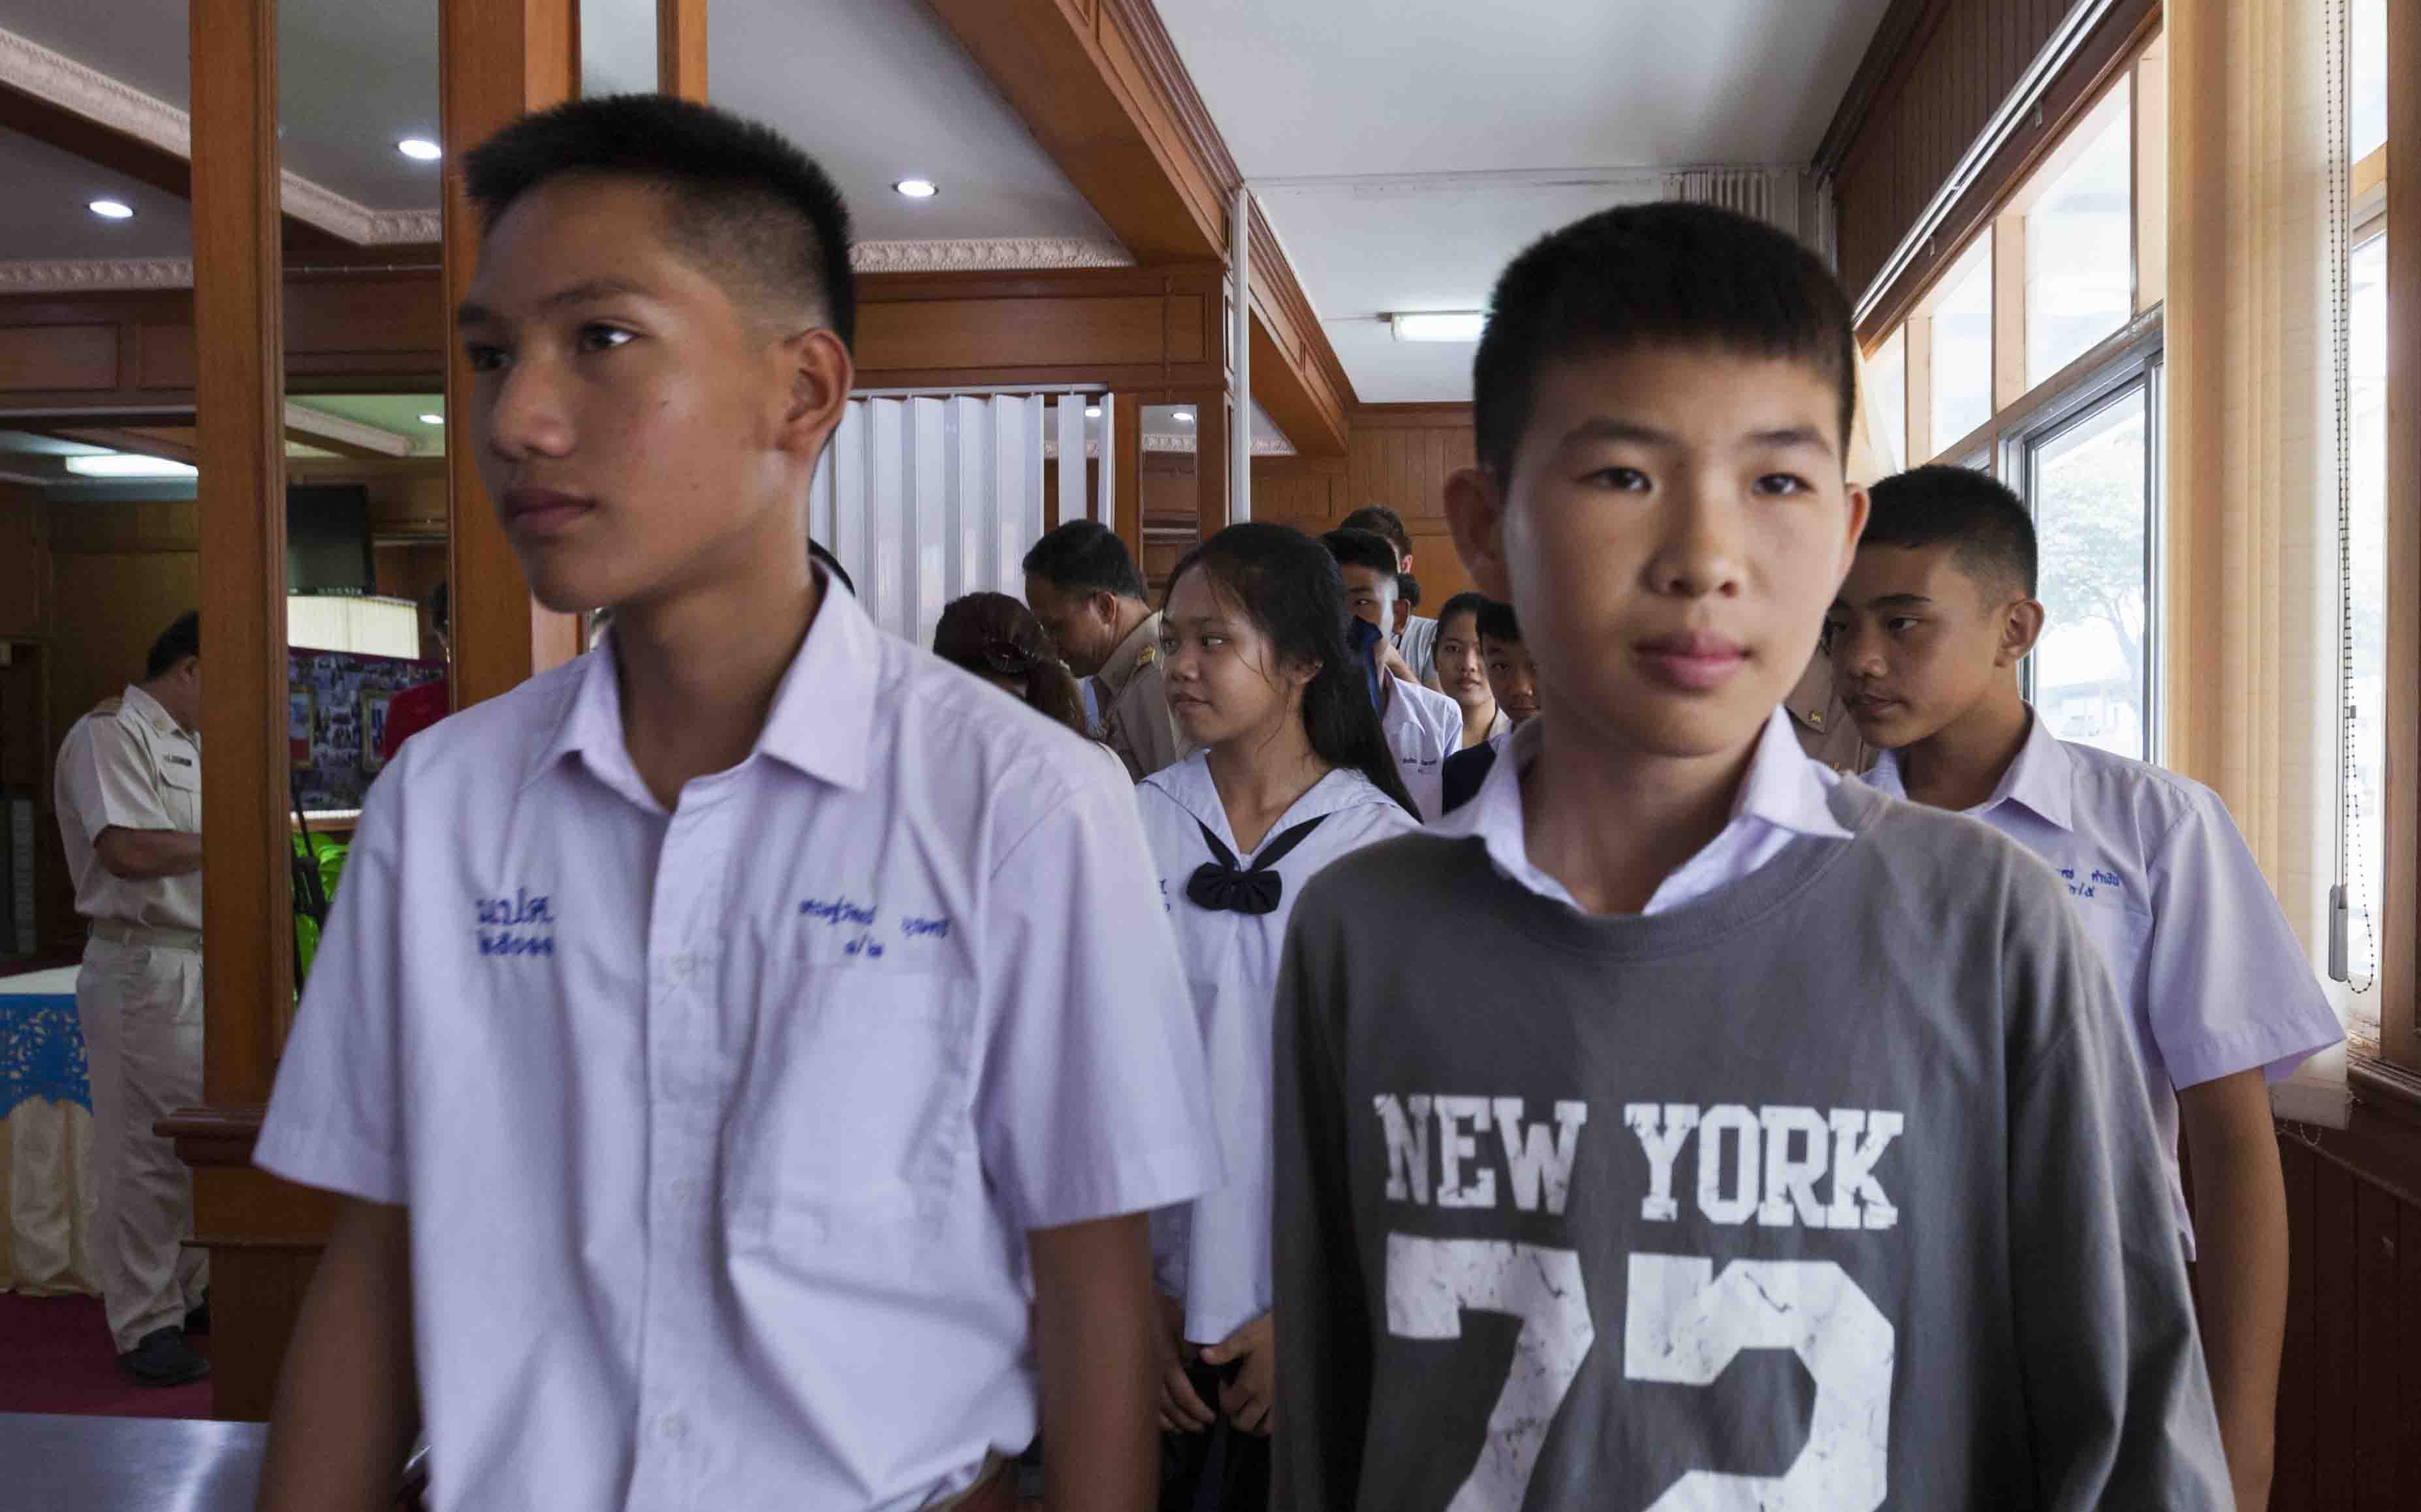 El Sumario - Los jóvenes duraron 18 días atrapados en una cueva tailandesa junto a su entrenador y la noticia conmocionó al mundo entero